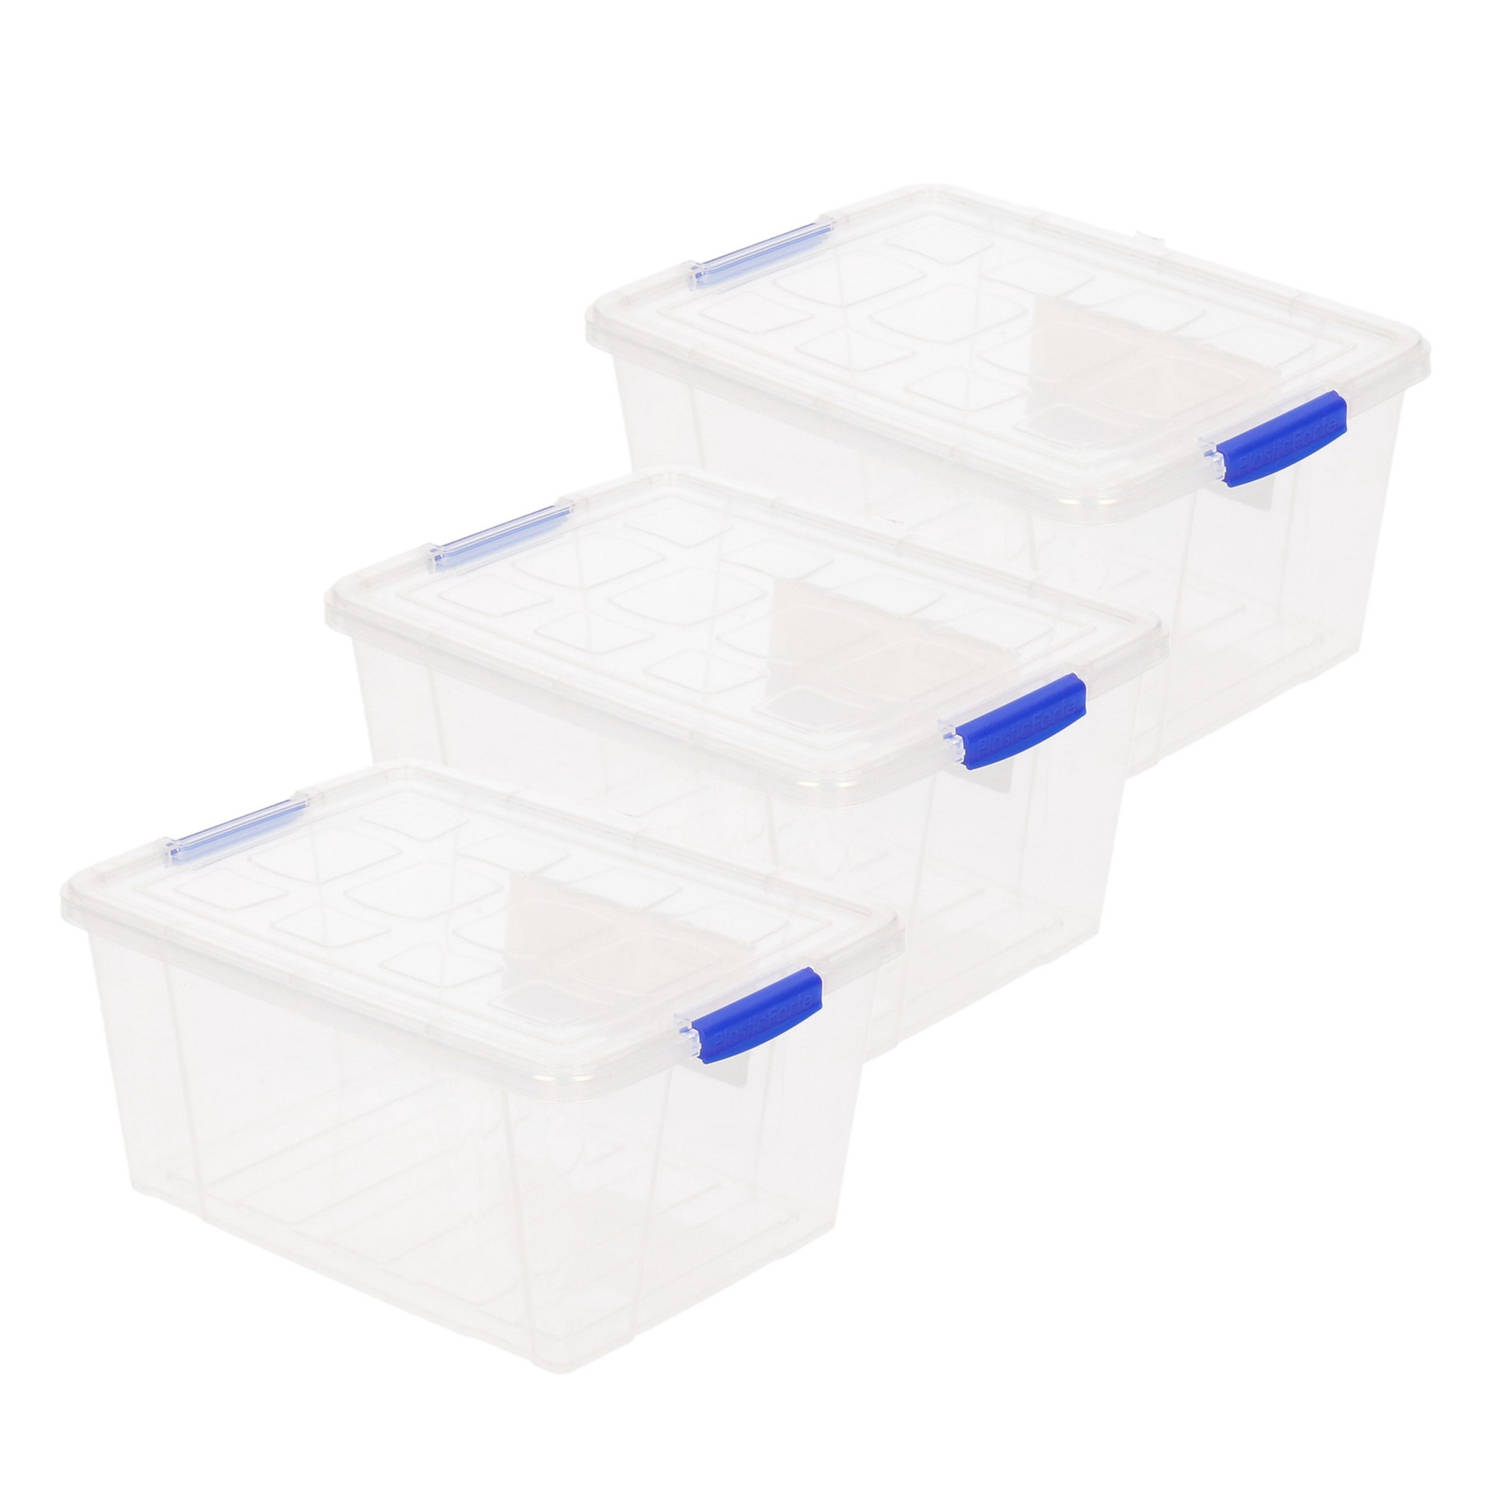 3x Stuks Opslagboxen-bakken-organizers Met Deksel 16 Liter 40 X 30 X 21 Cm Transparant Plastic Opber